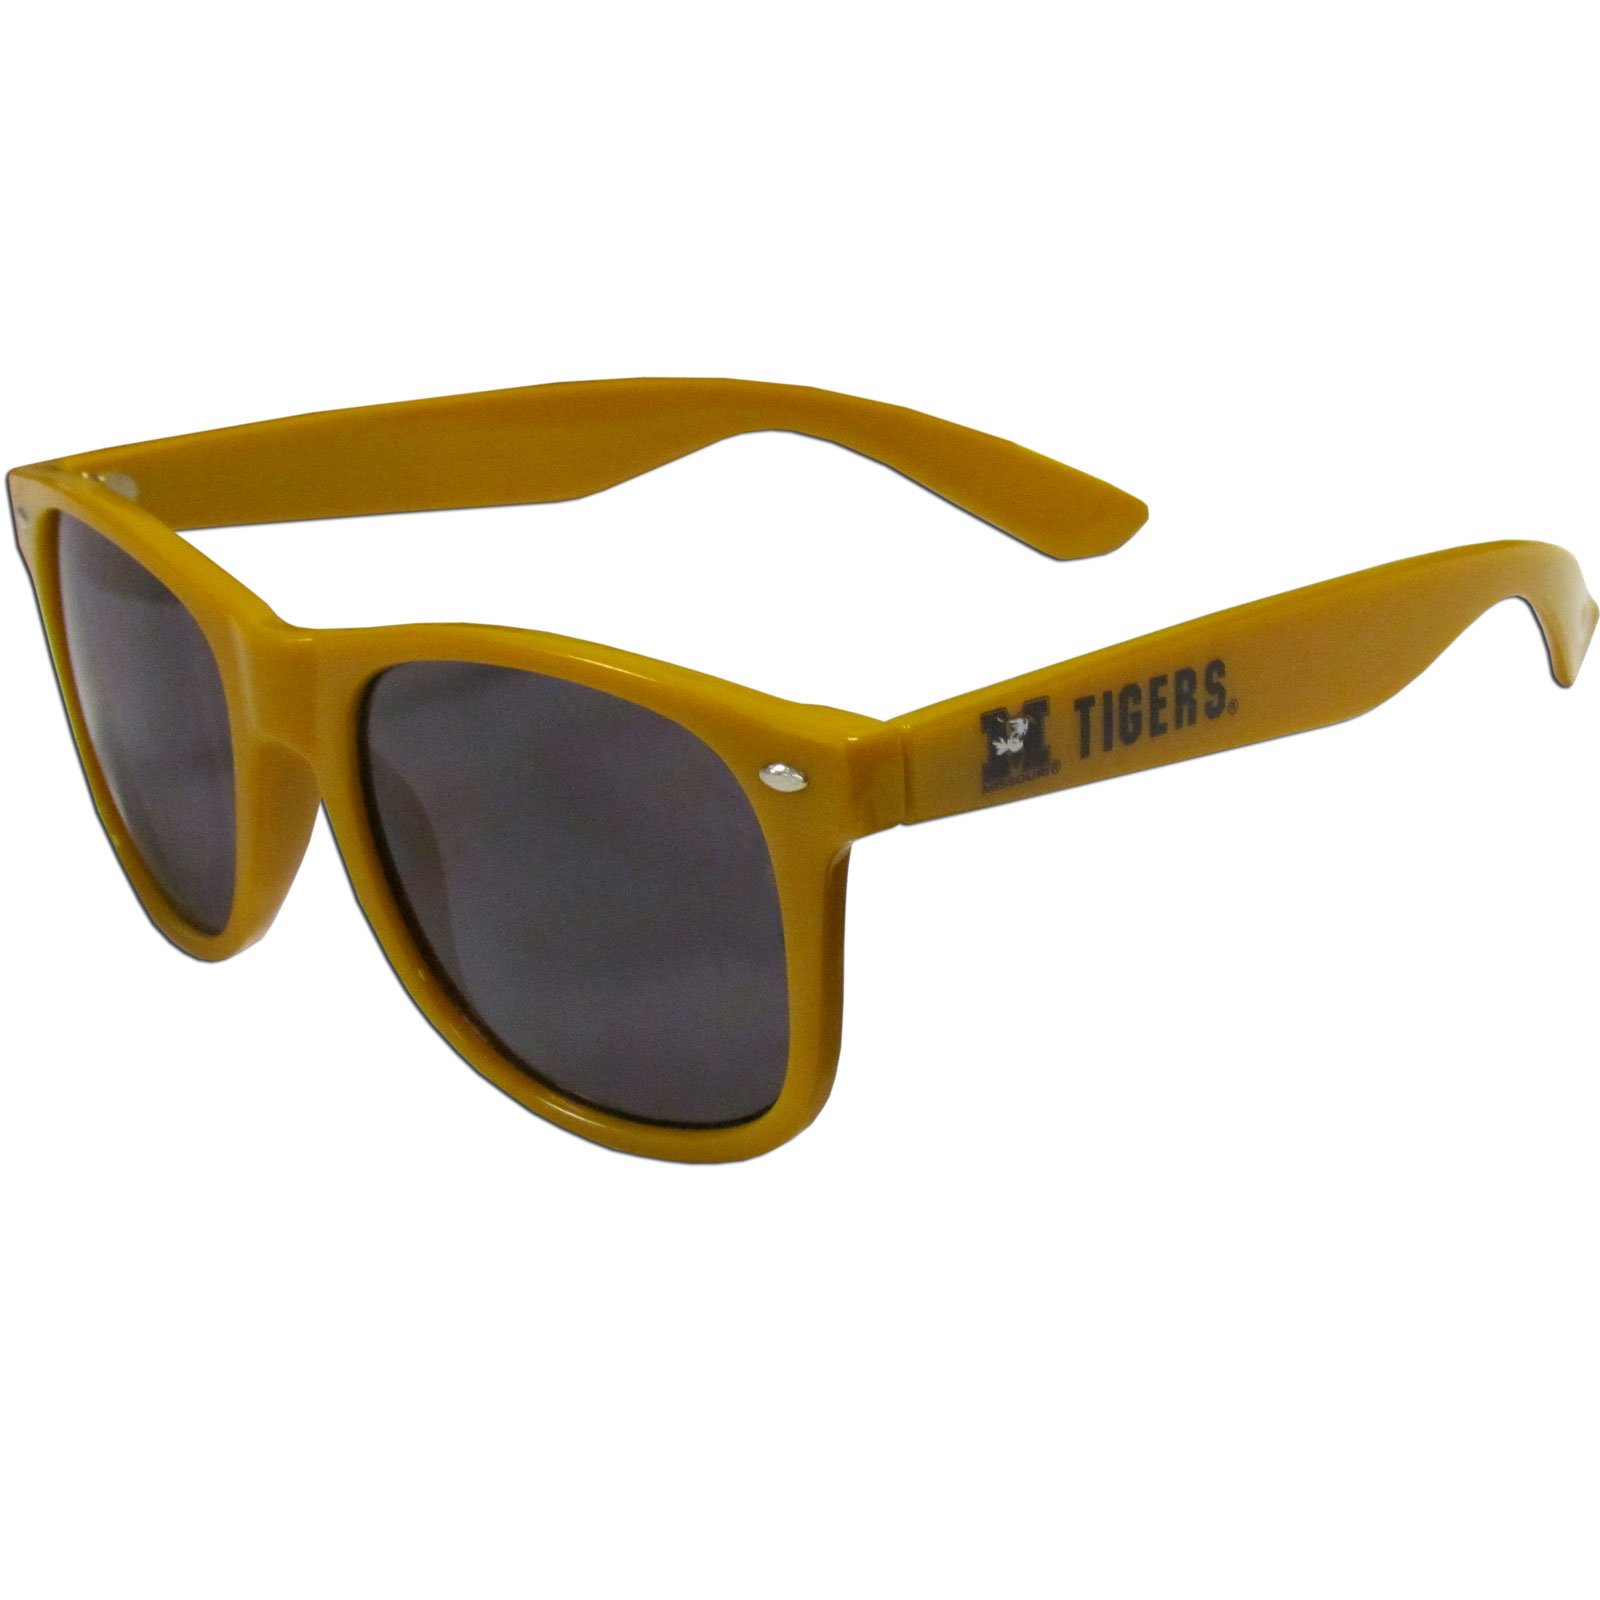 Missouri Wayfarer Sunglasses